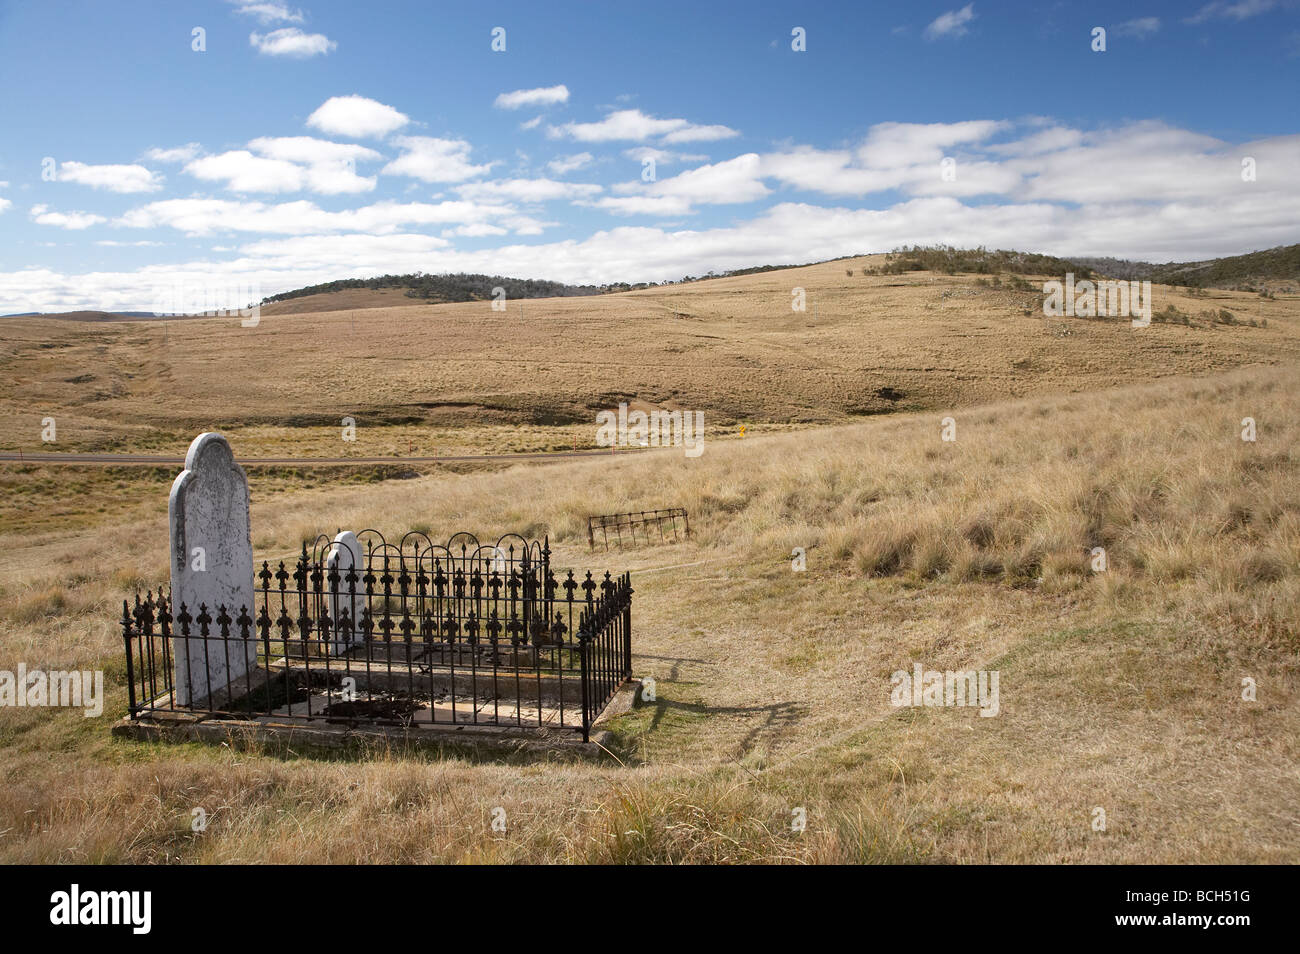 Historische alte Friedhof aufgegeben Gold Rush Town von Kiandra Kosciuszko National Park Snowy Mountains, New South Wales Australien Stockfoto